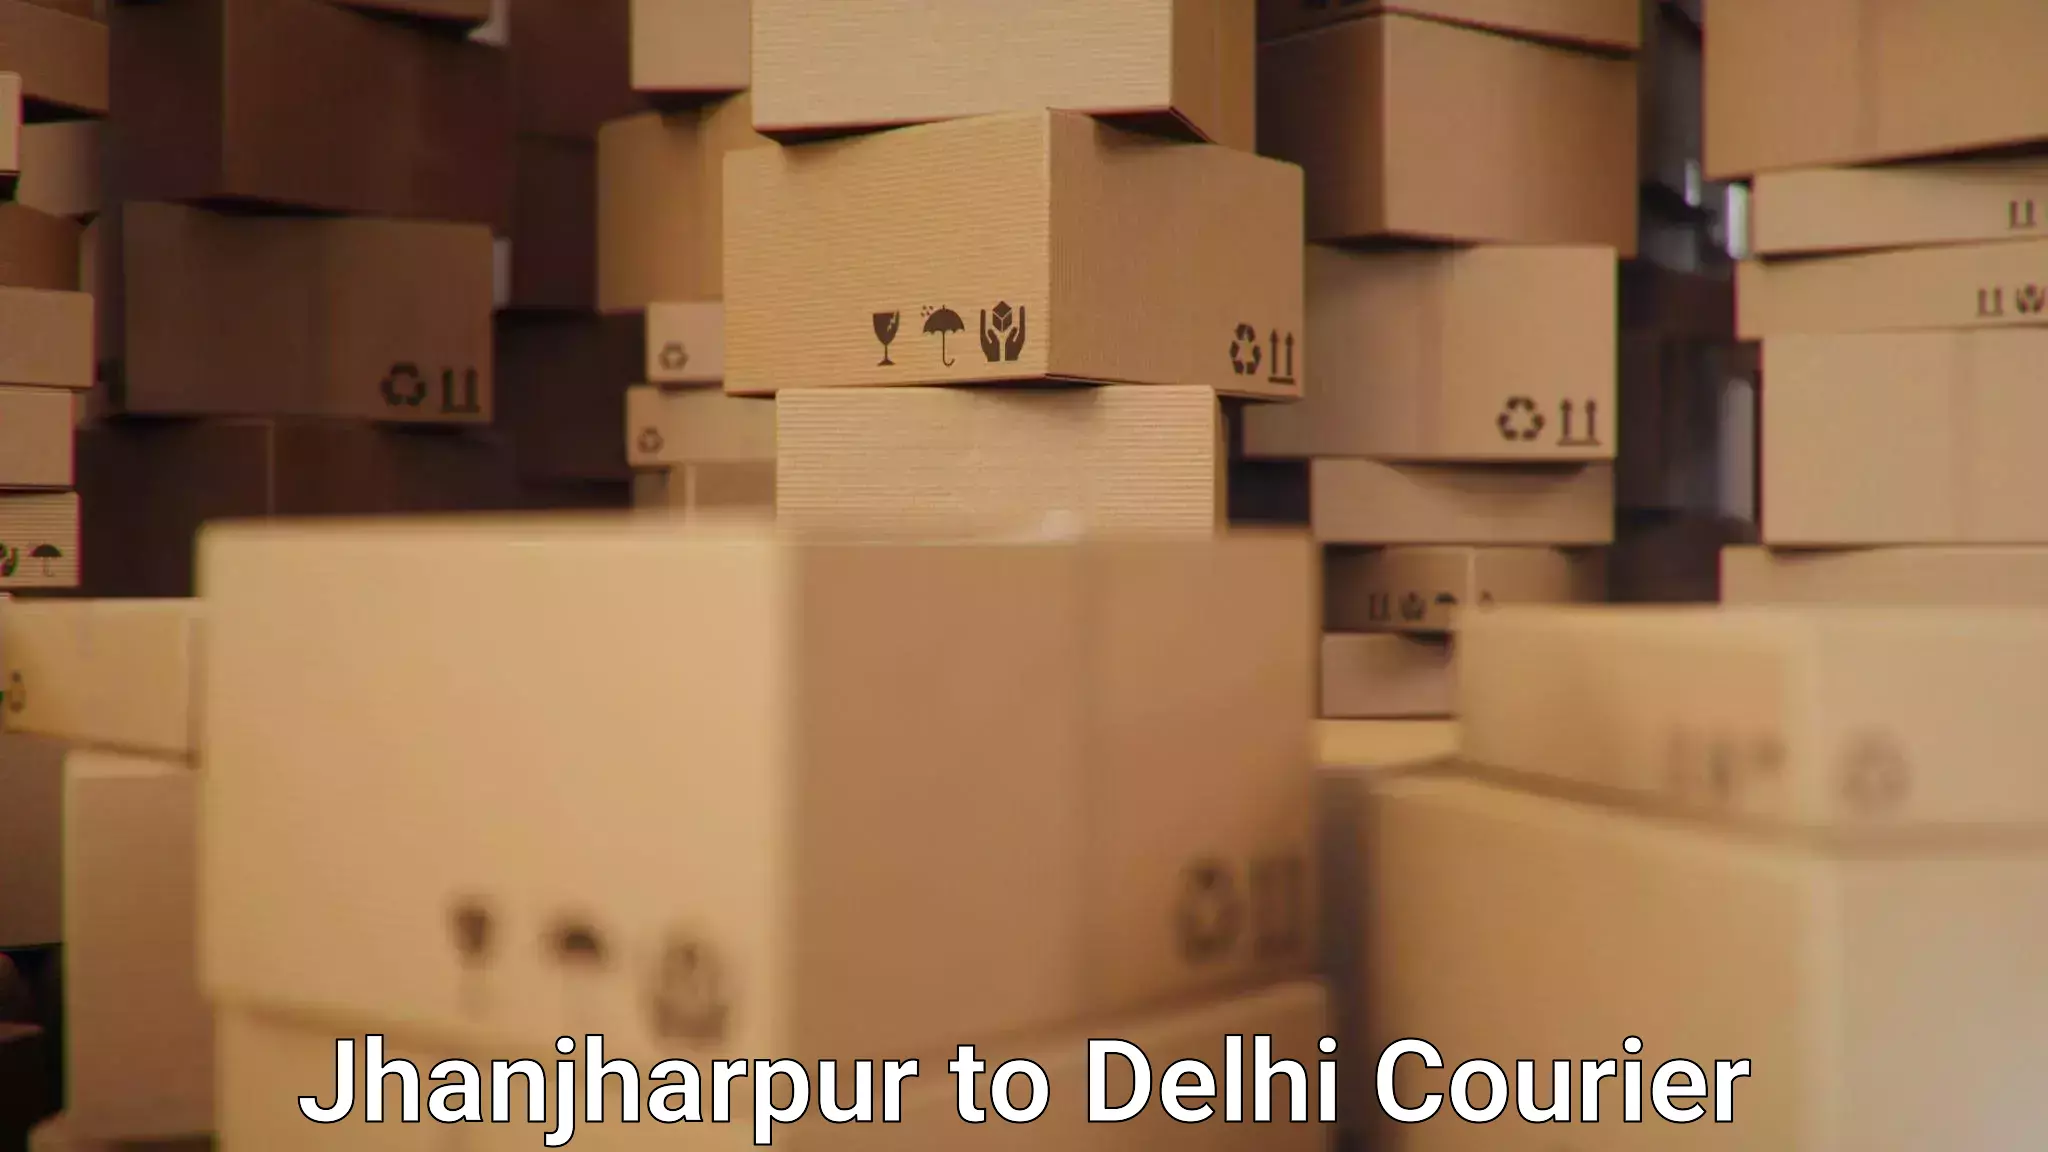 Advanced shipping network Jhanjharpur to NIT Delhi